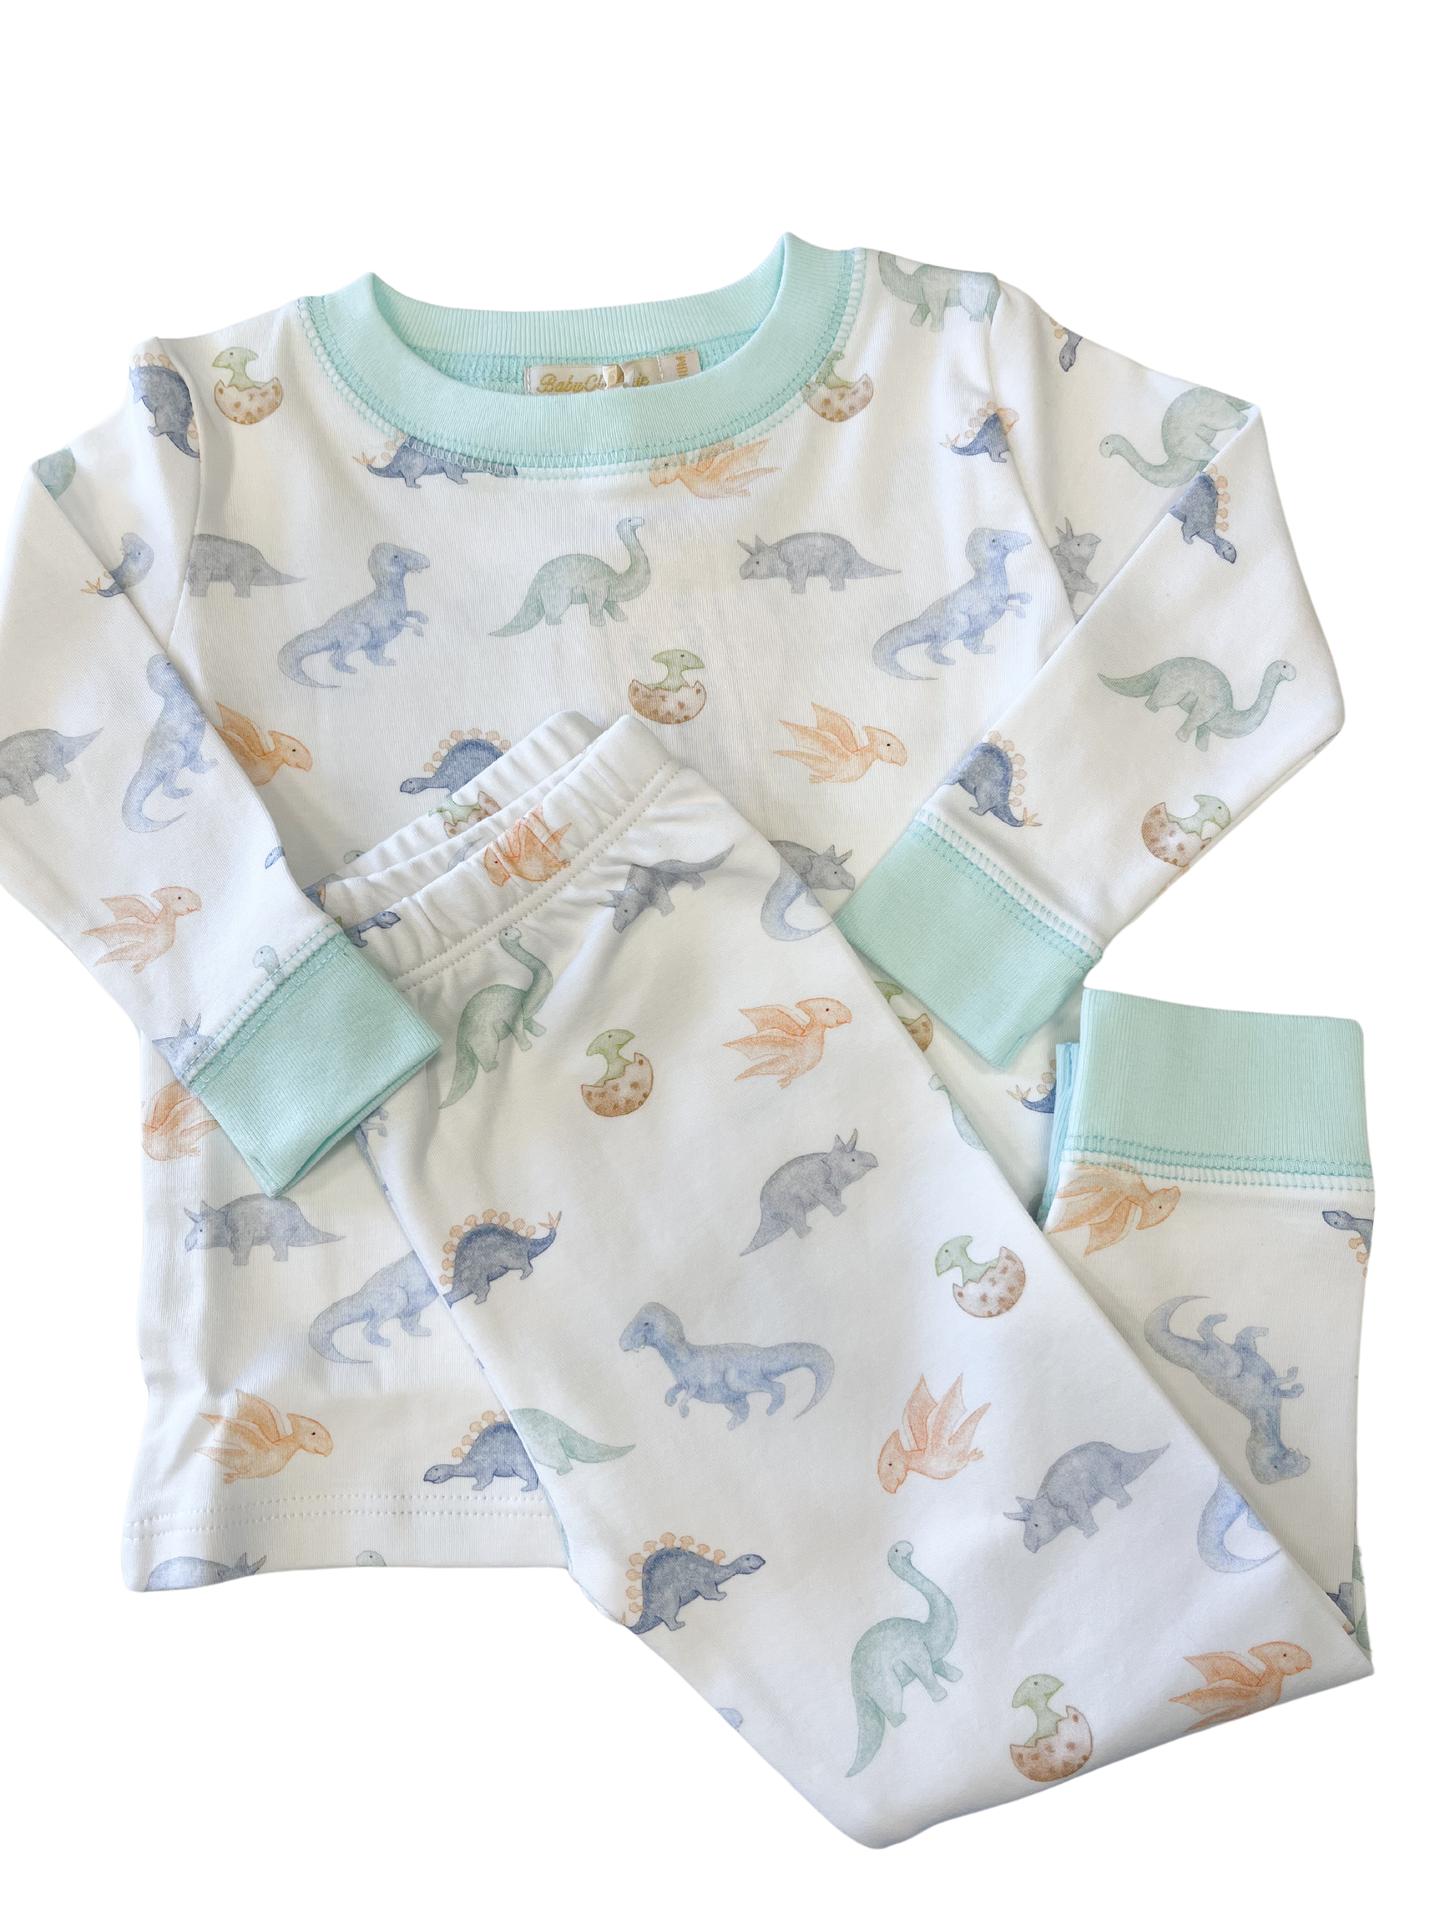 Baby Dinos Pajama Set - Magpies Paducah